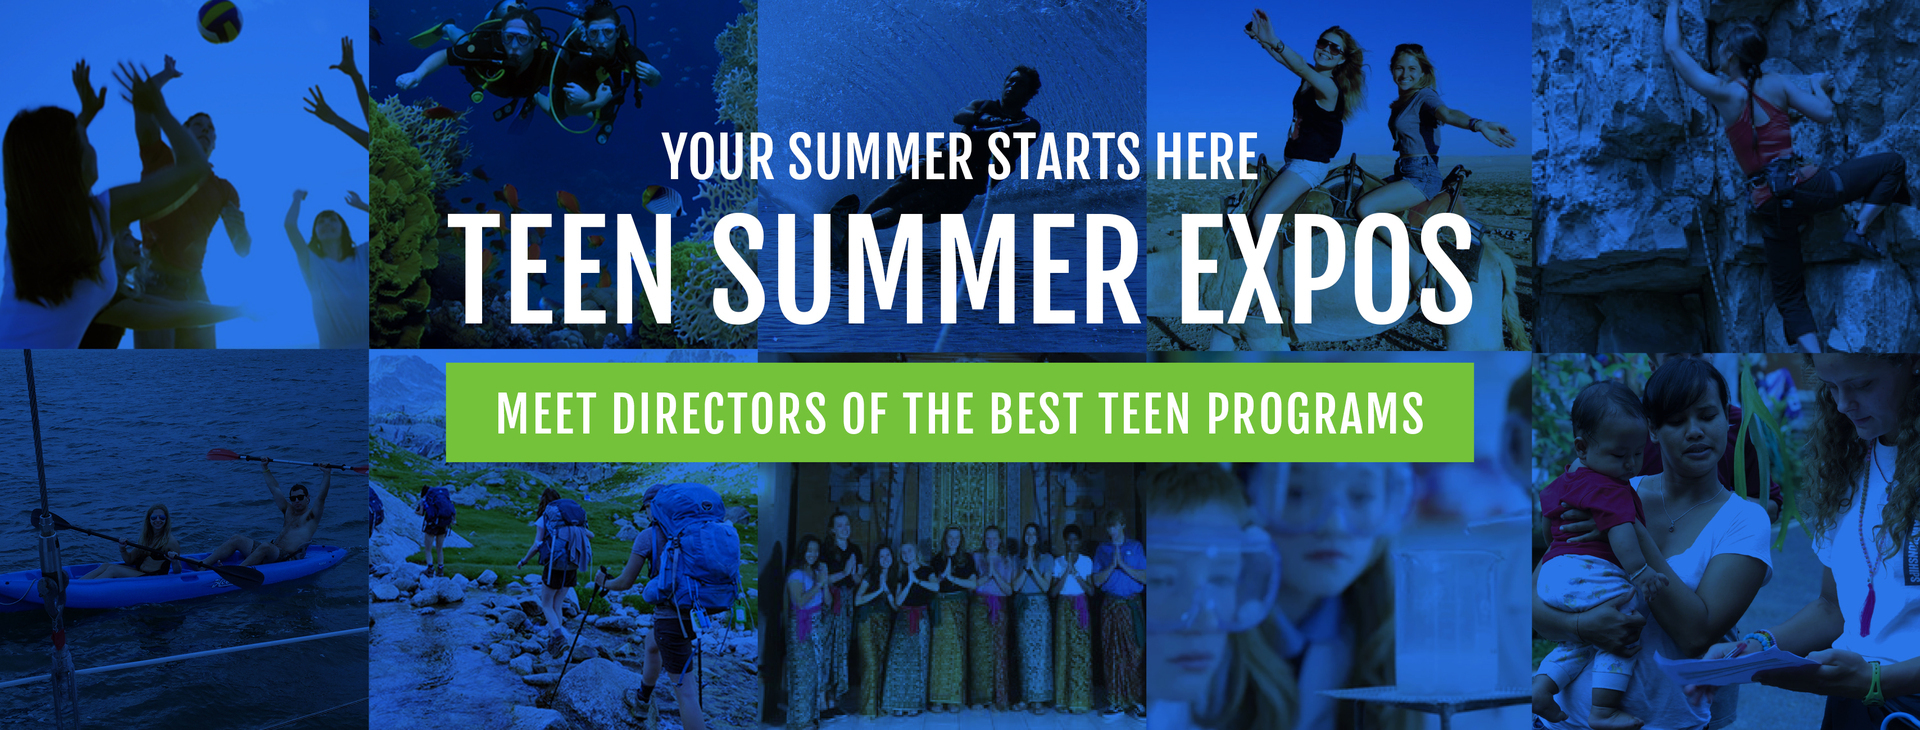 Teen Summer Expo, Newton, Massachusetts, United States